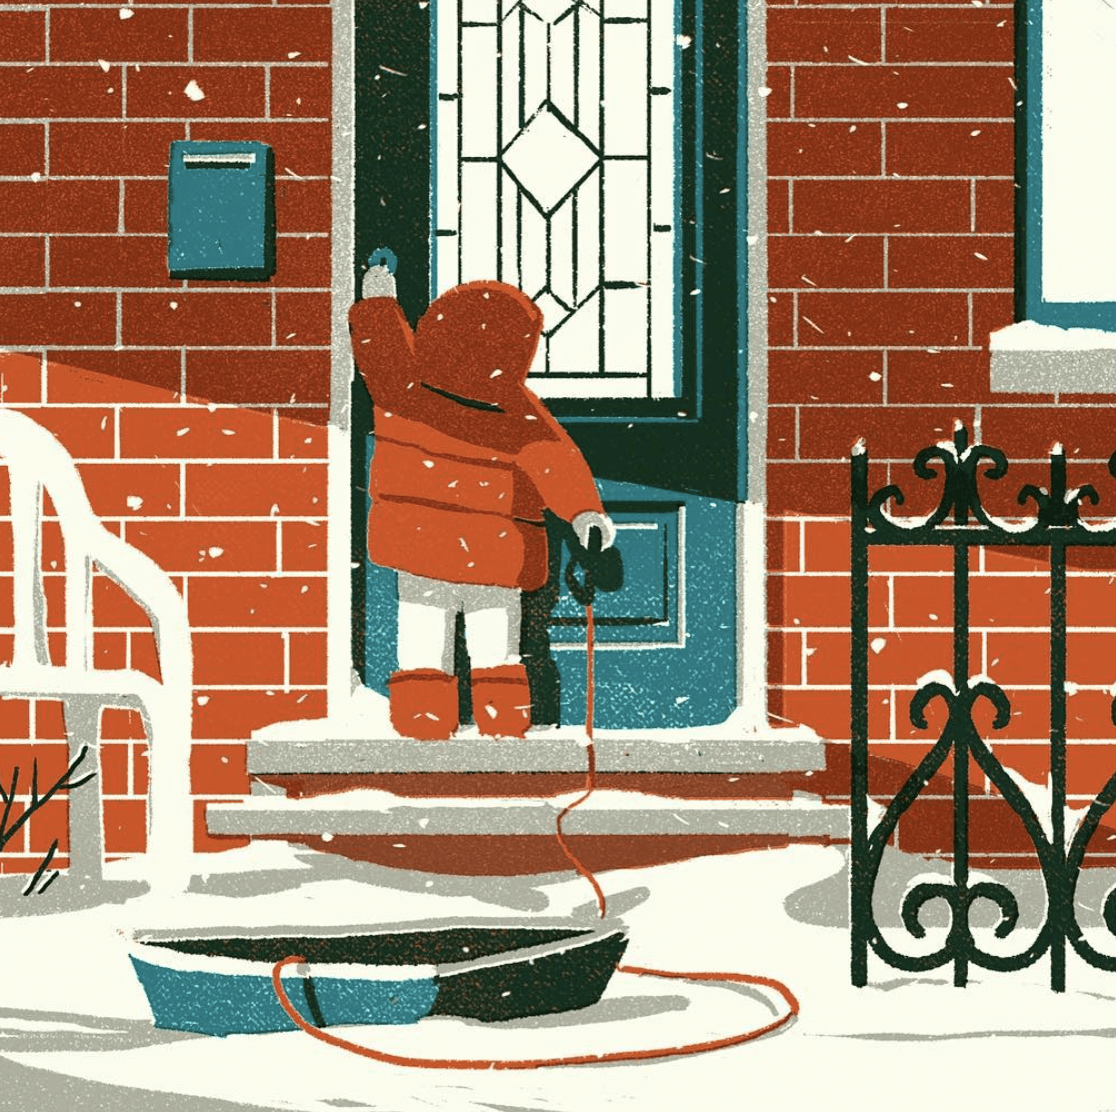 Journée de neige - illustration d'un paysage réalisée par Tom Haugomat